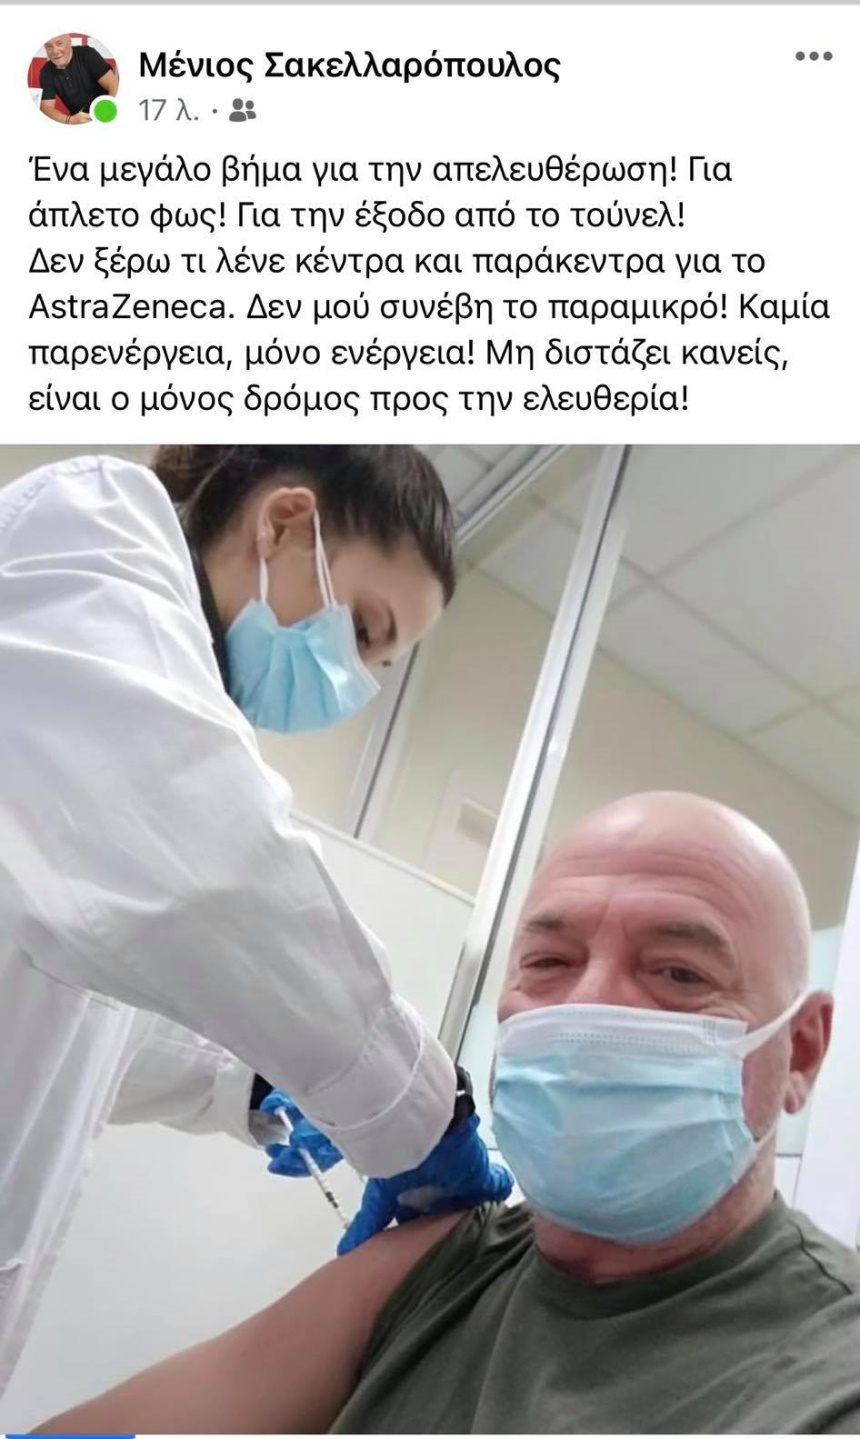 Ο αθλητικογράφος Μένιος Σακελλαρόπουλος εμβολιάστηκε με το AstraZeneca και μας στέλνει μηνύματα αισιοδοξίας όπως αυτός μοναδικά γνωρίζει.